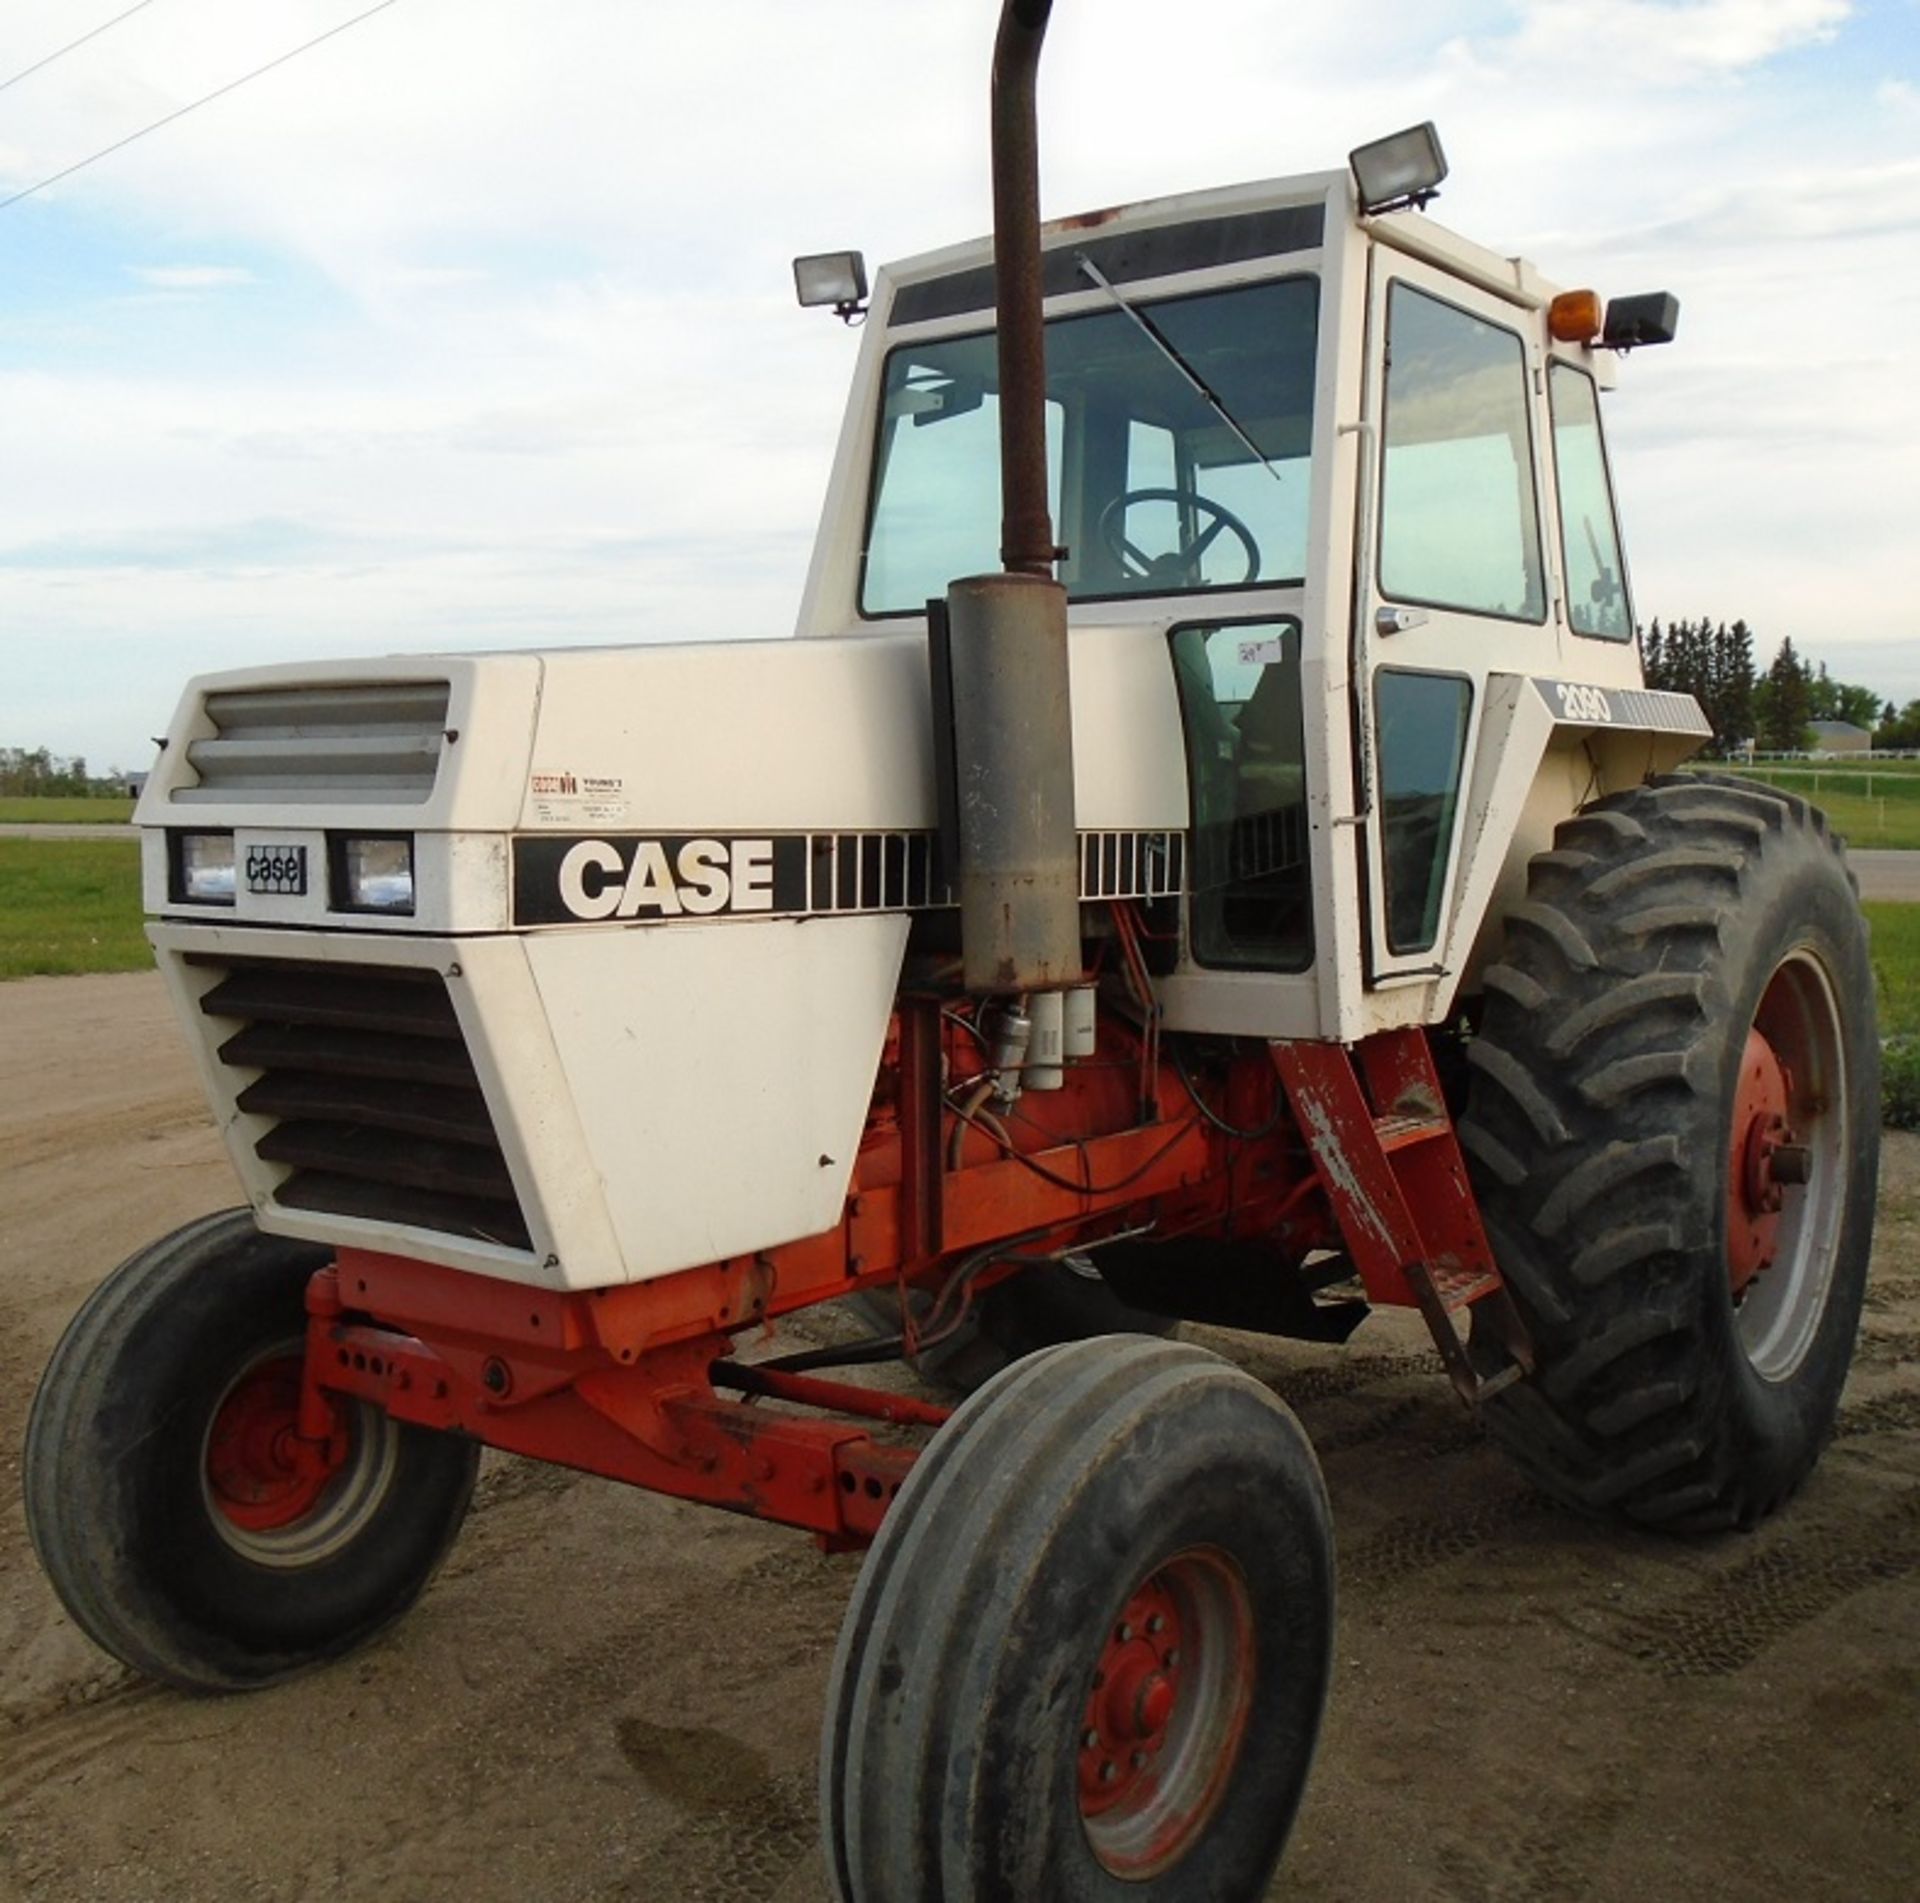 Case 2090 Diesel Tractor, s/n: 10175401 - Image 2 of 2